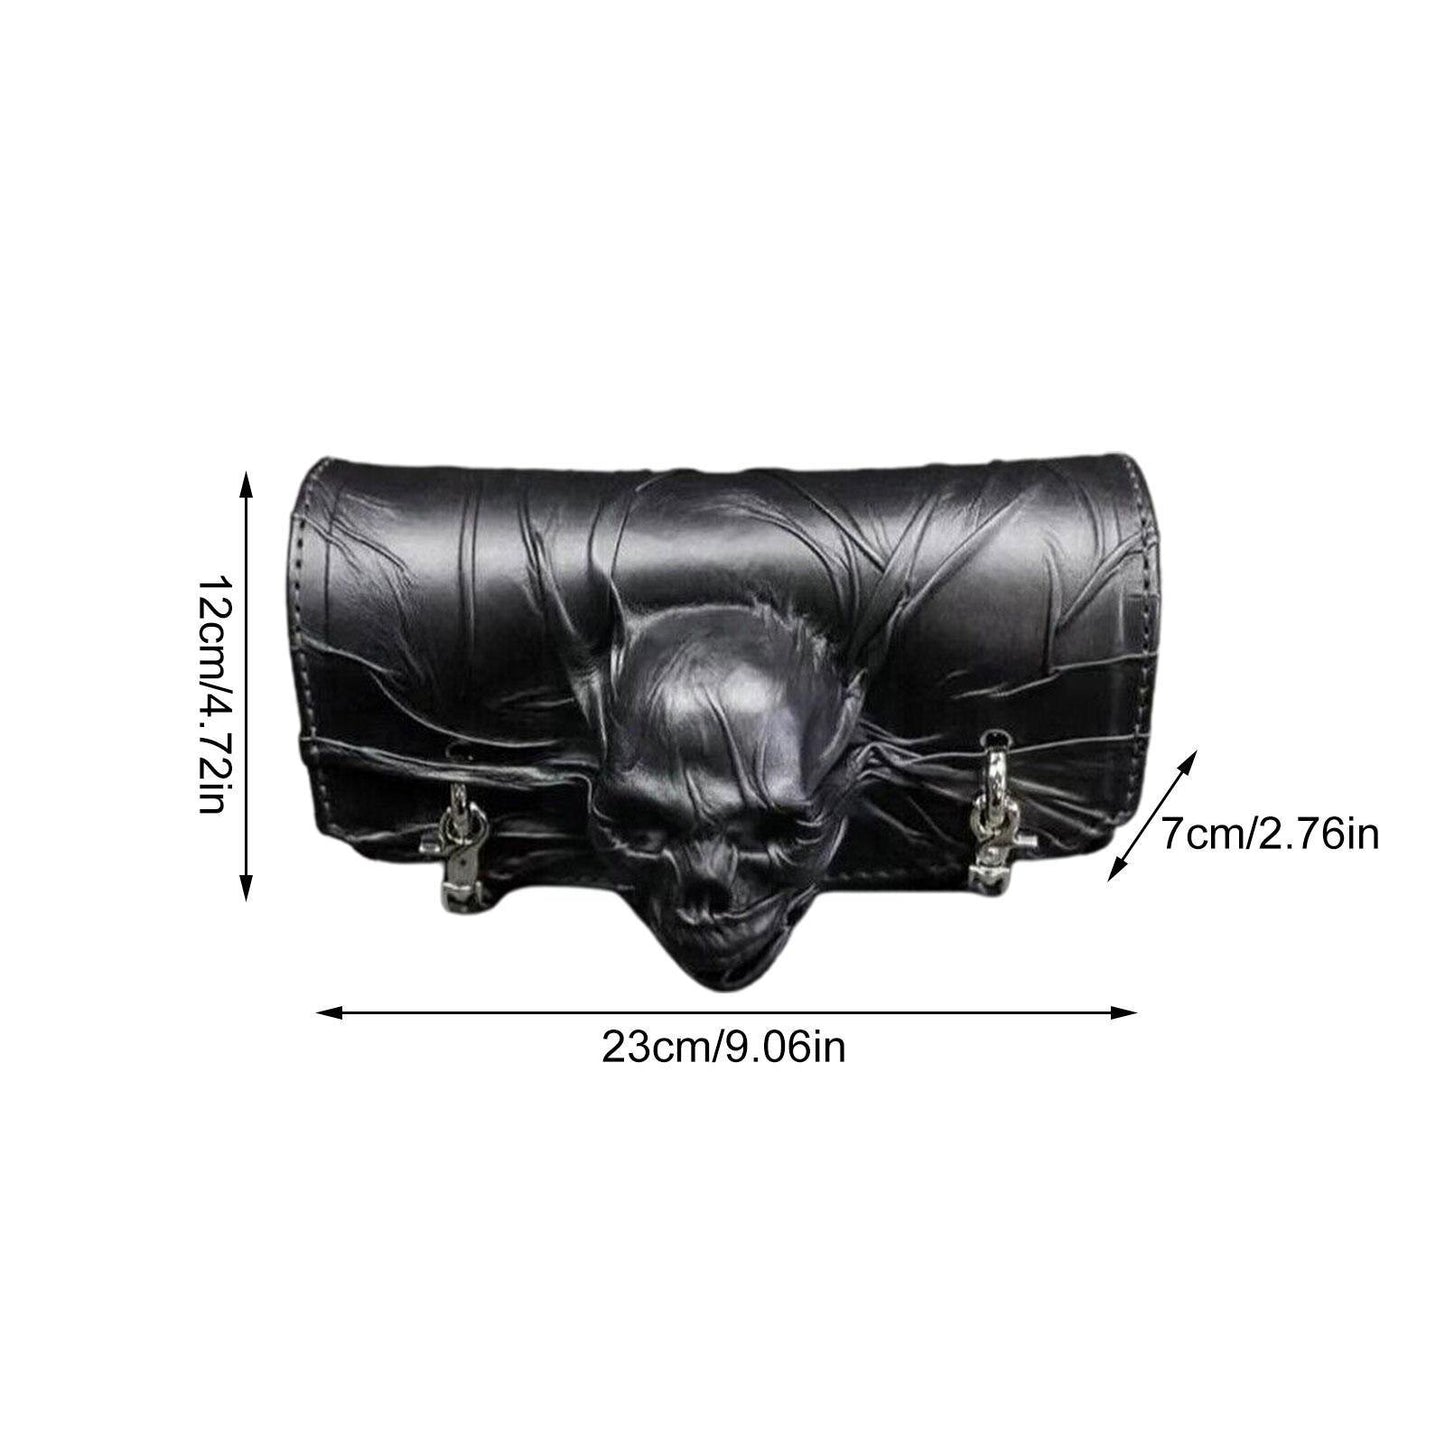 Skull Motorcycle Fork Saddle Bag